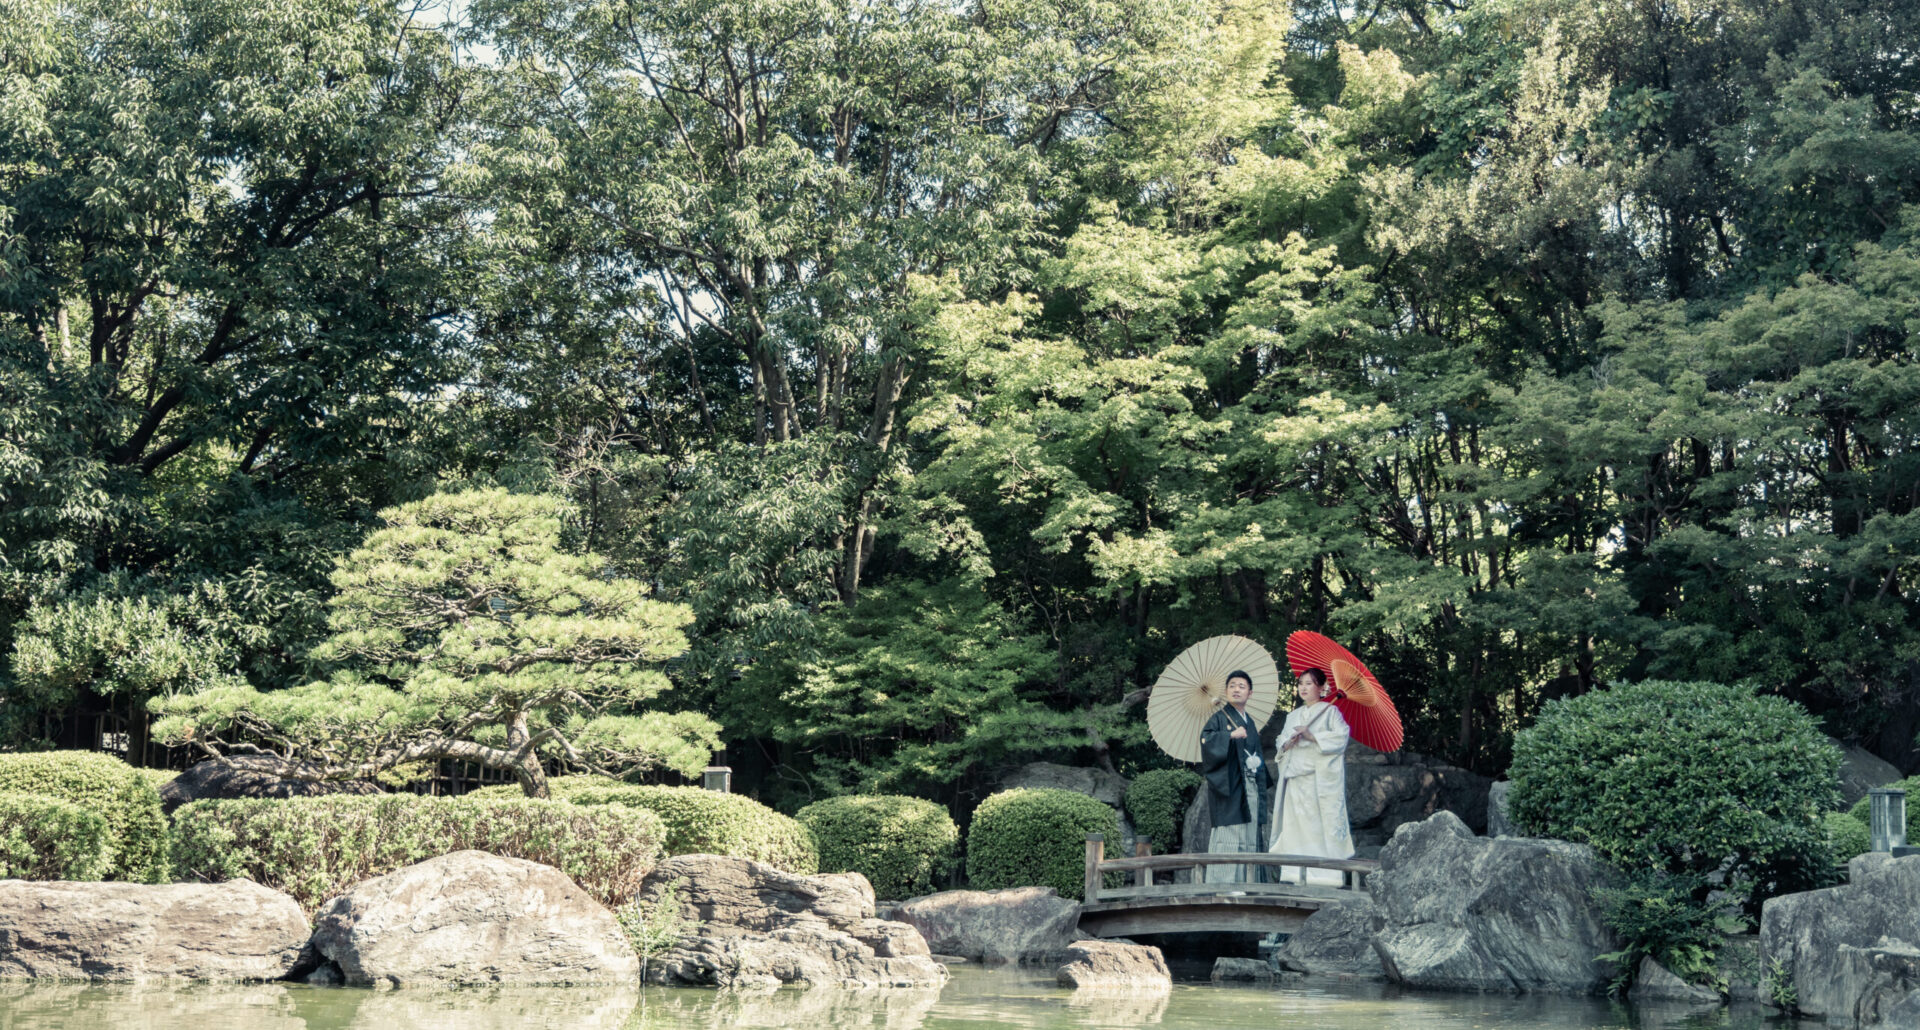 福岡で前撮り撮影・フォトウェディングならROLL7 WEDDING